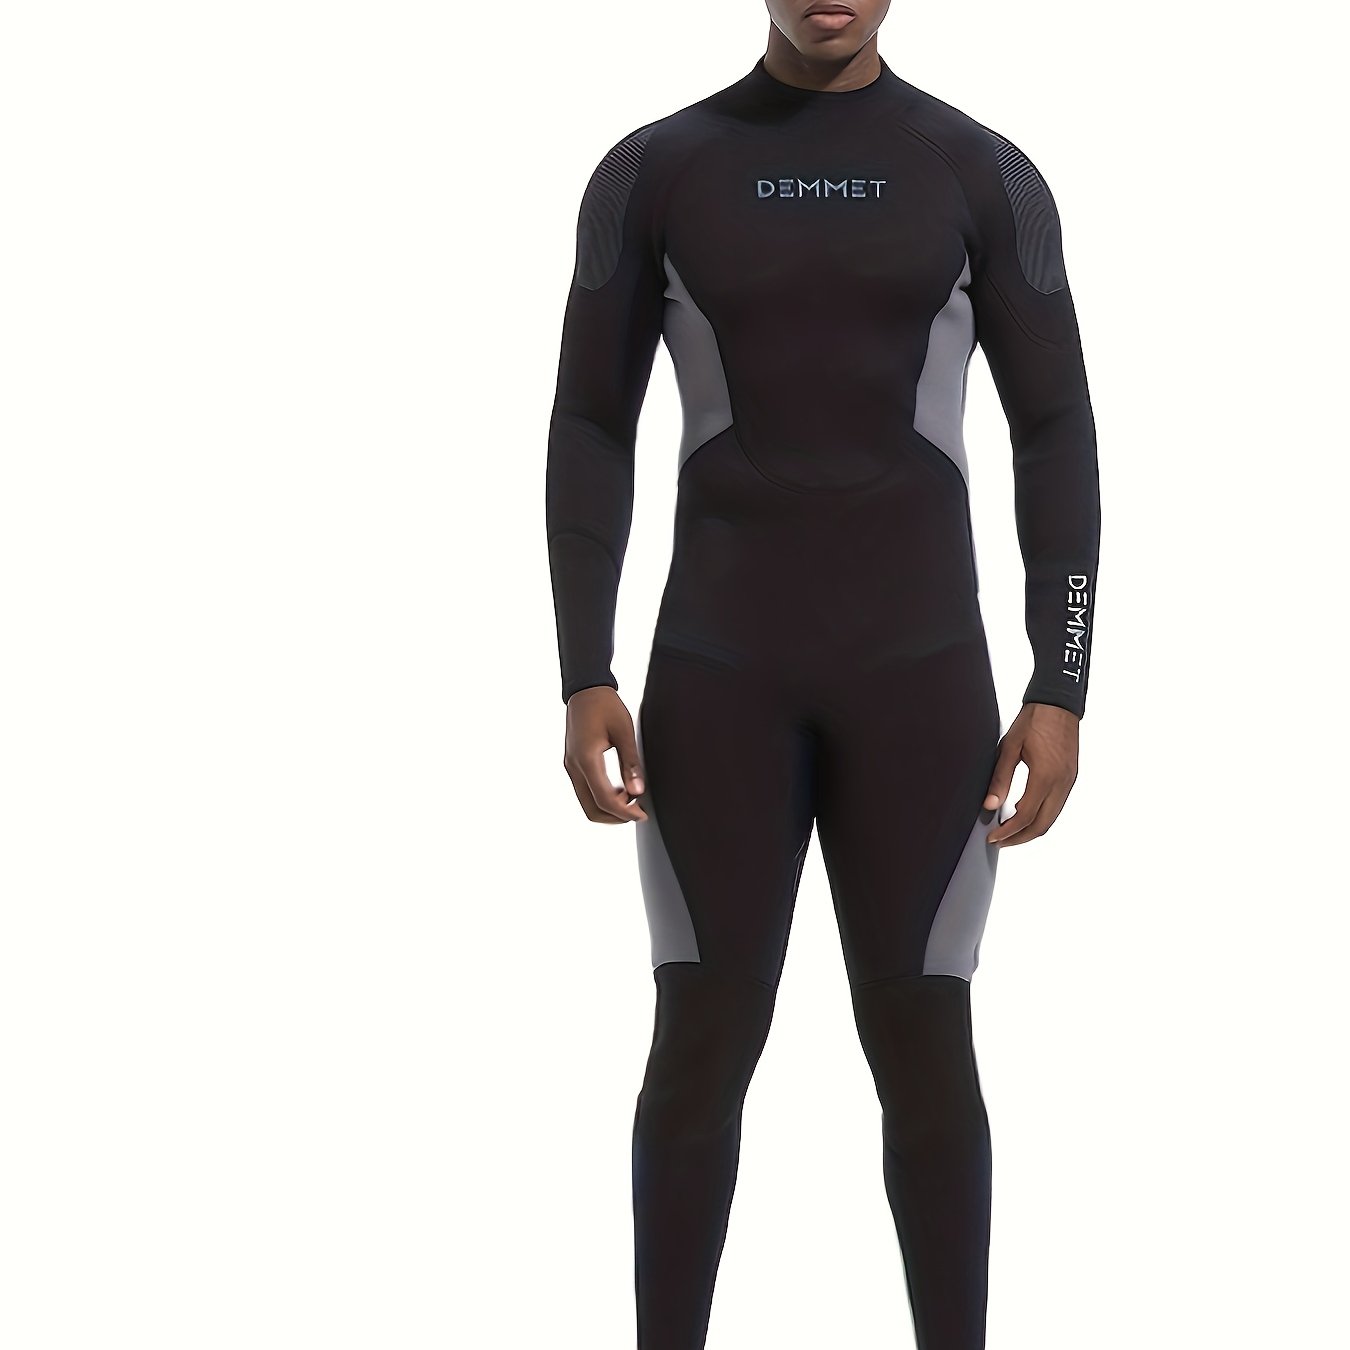 * Men's 3mm Neoprene Color Block Long Sleeve Skinny Stretch Wet Suit, Men's  Sunscreen Full Wet Suit For Surfing Swimming Sports